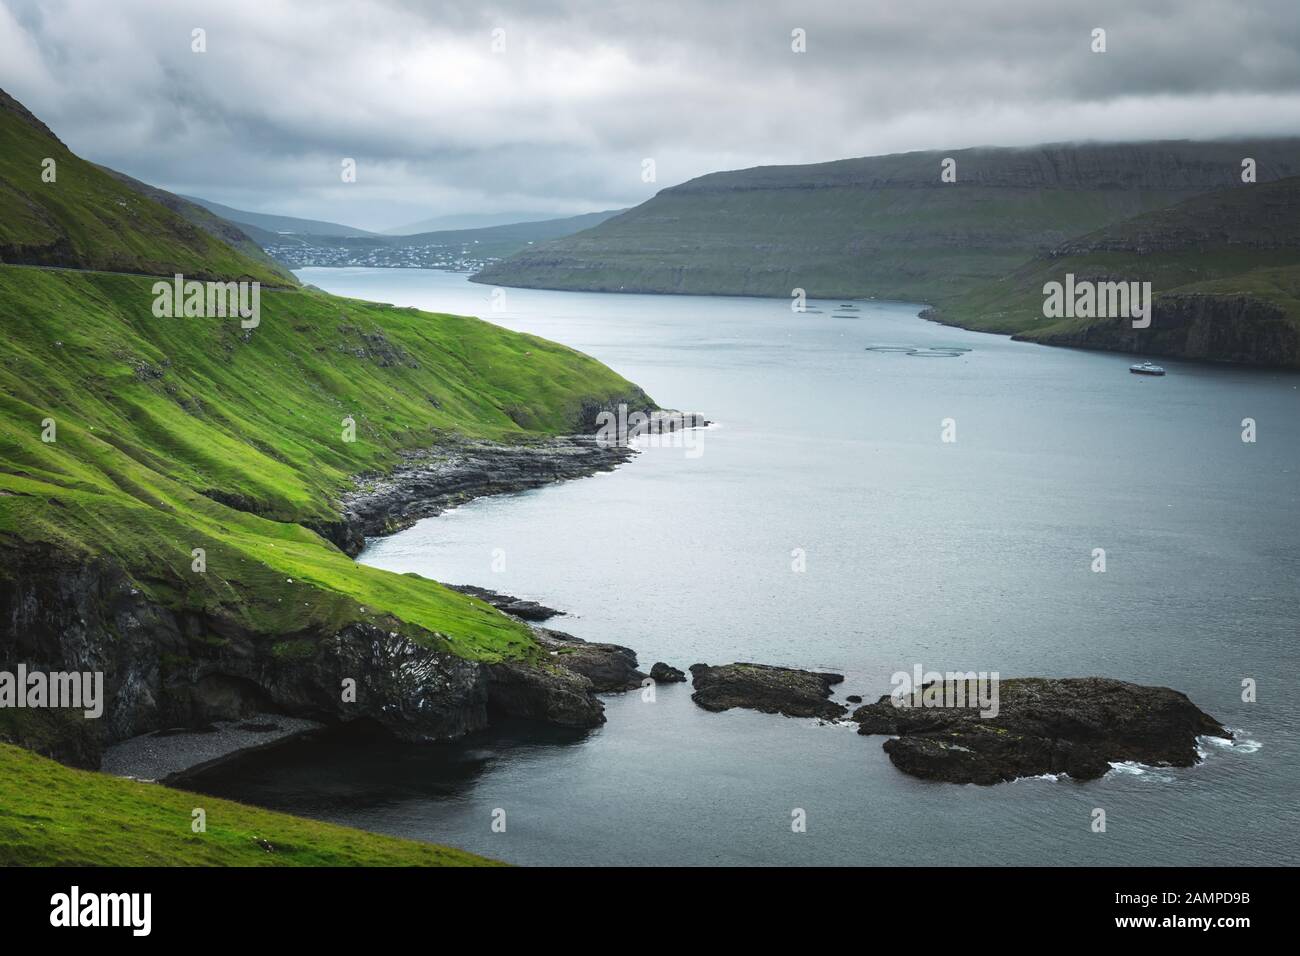 Vue spectaculaire des collines verdoyantes de l'île de Vagar et ville Sorvagur et sur l'arrière-plan. Îles Féroé, Danemark. Photographie de paysage Banque D'Images